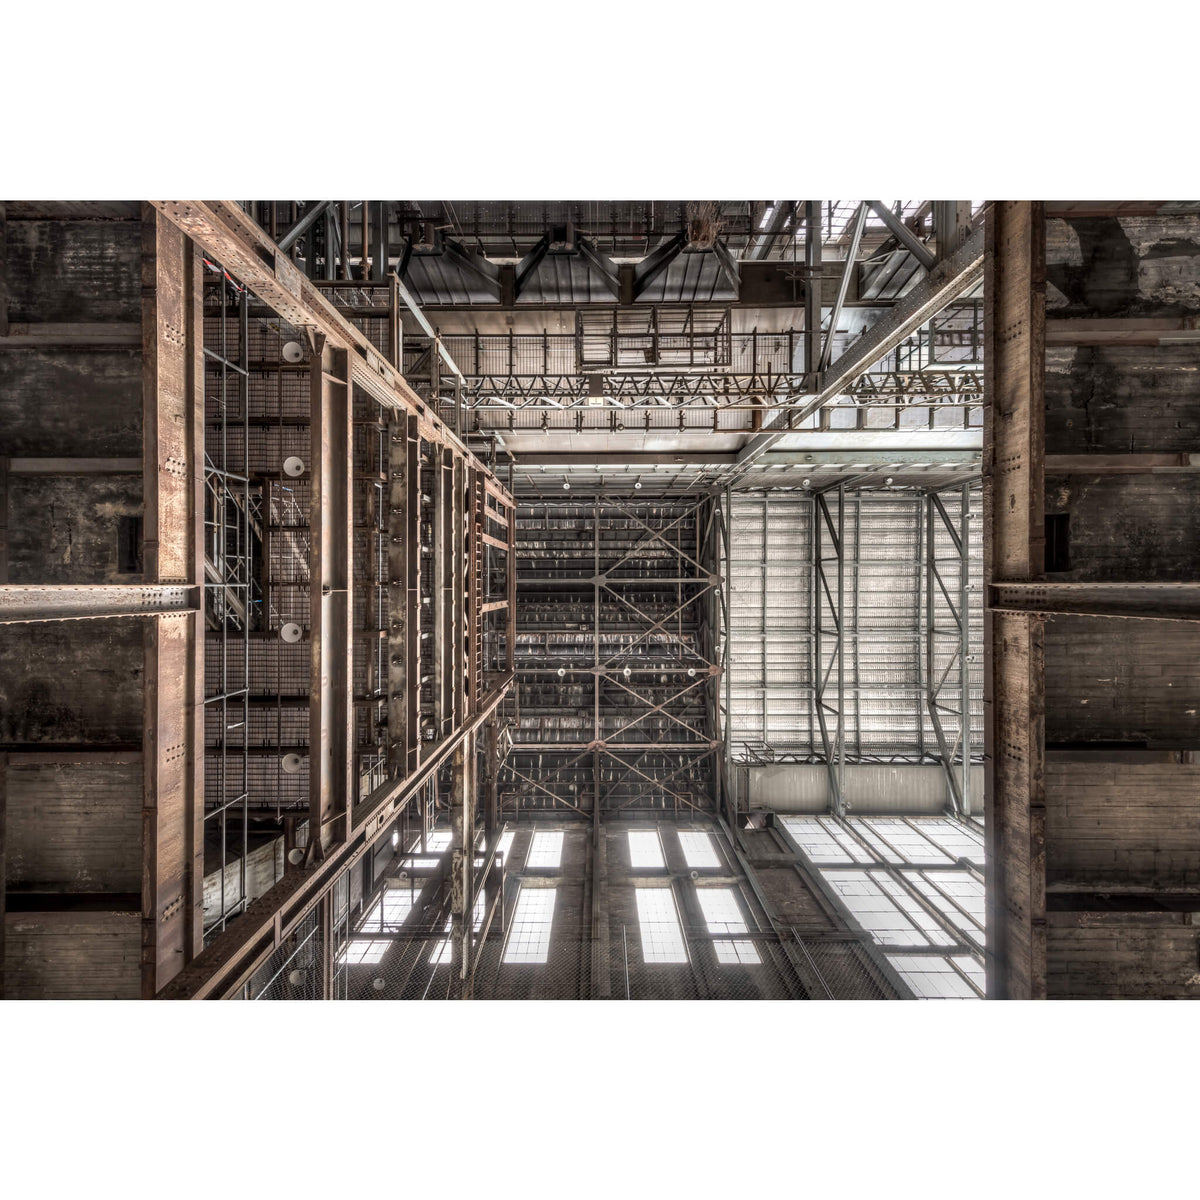 Boiler House Ceiling | White Bay Power Station